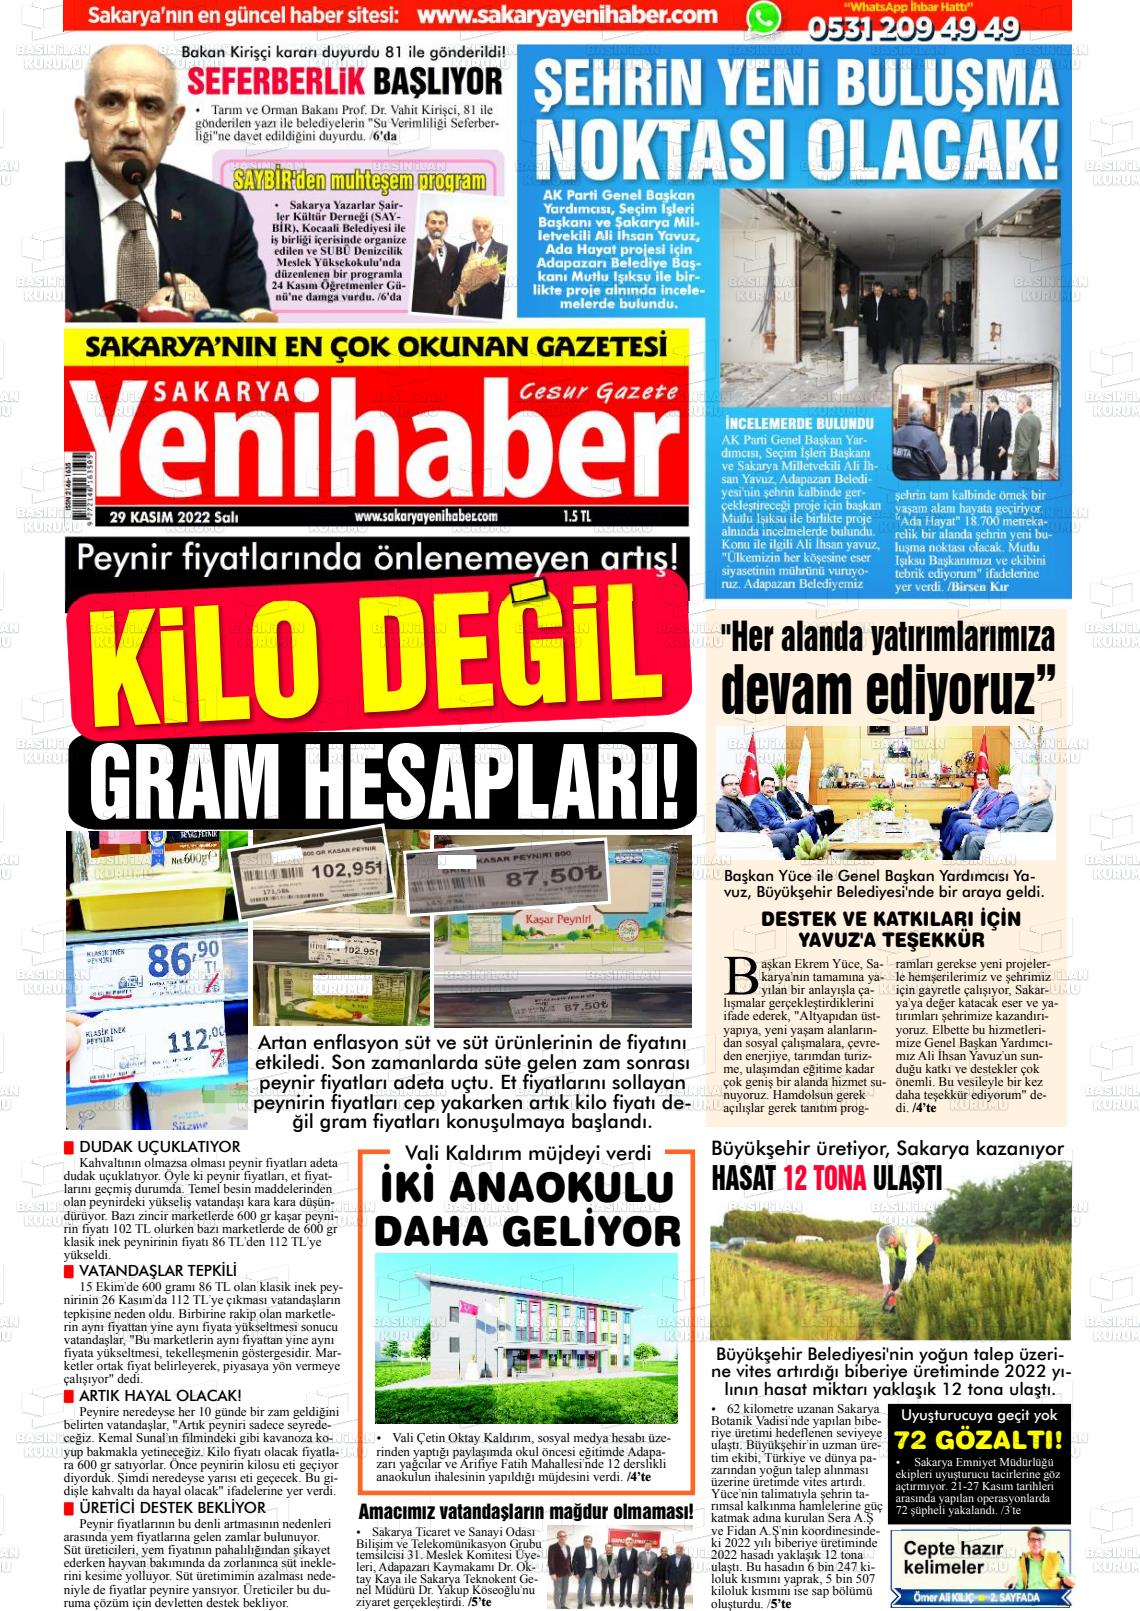 29 Kasım 2022 Sakarya Yeni Haber Gazete Manşeti